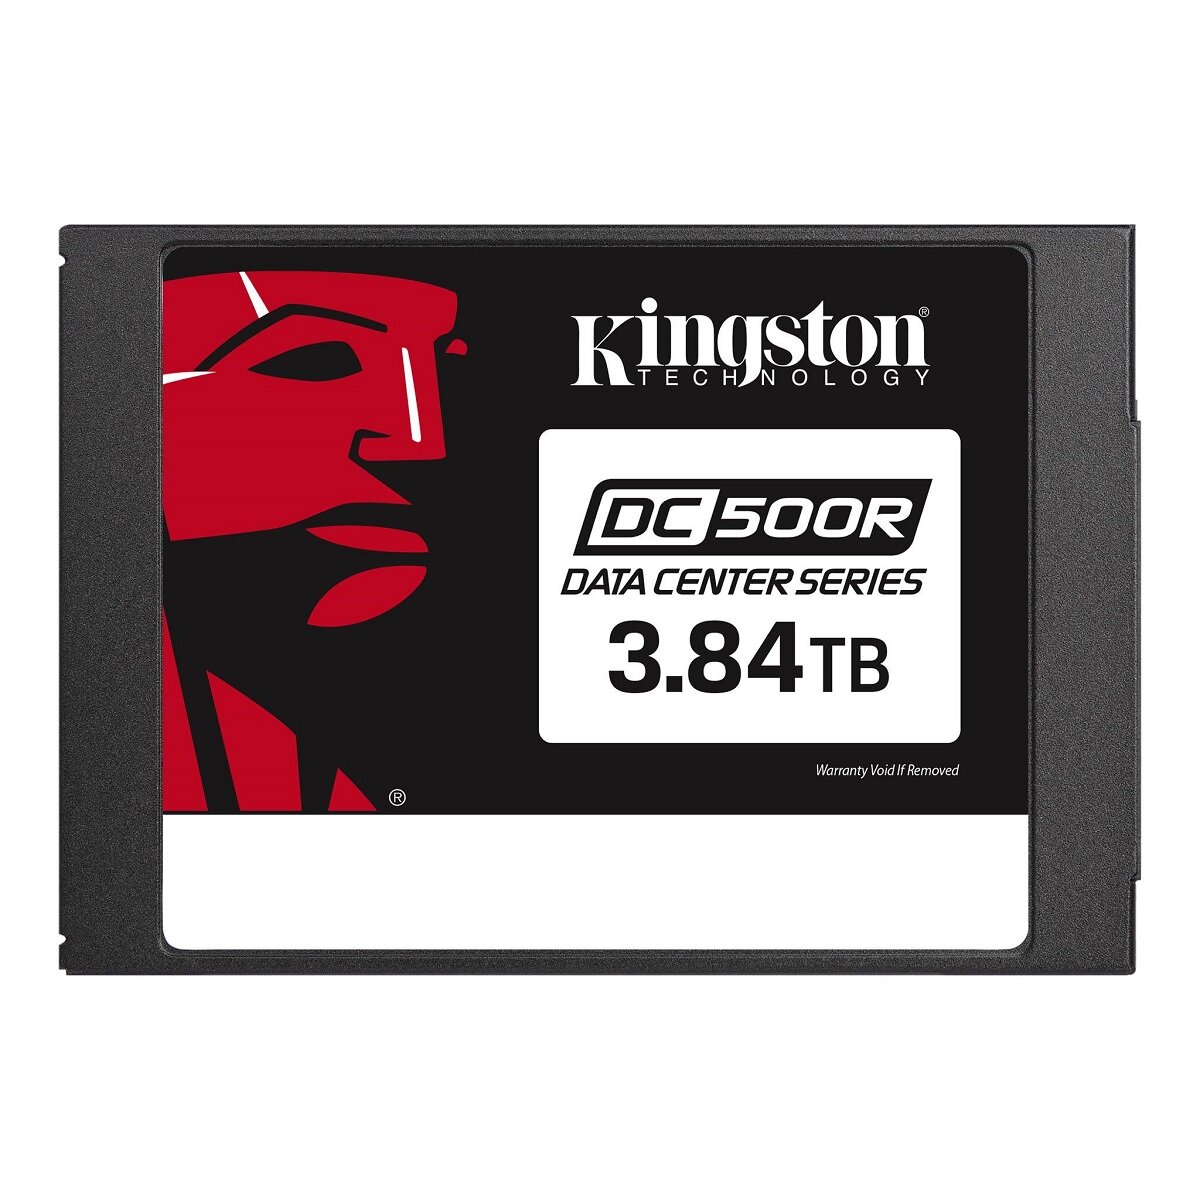 Dysk SSD Kingston DC500R 3840GB 2.5” widok dysku od frontu